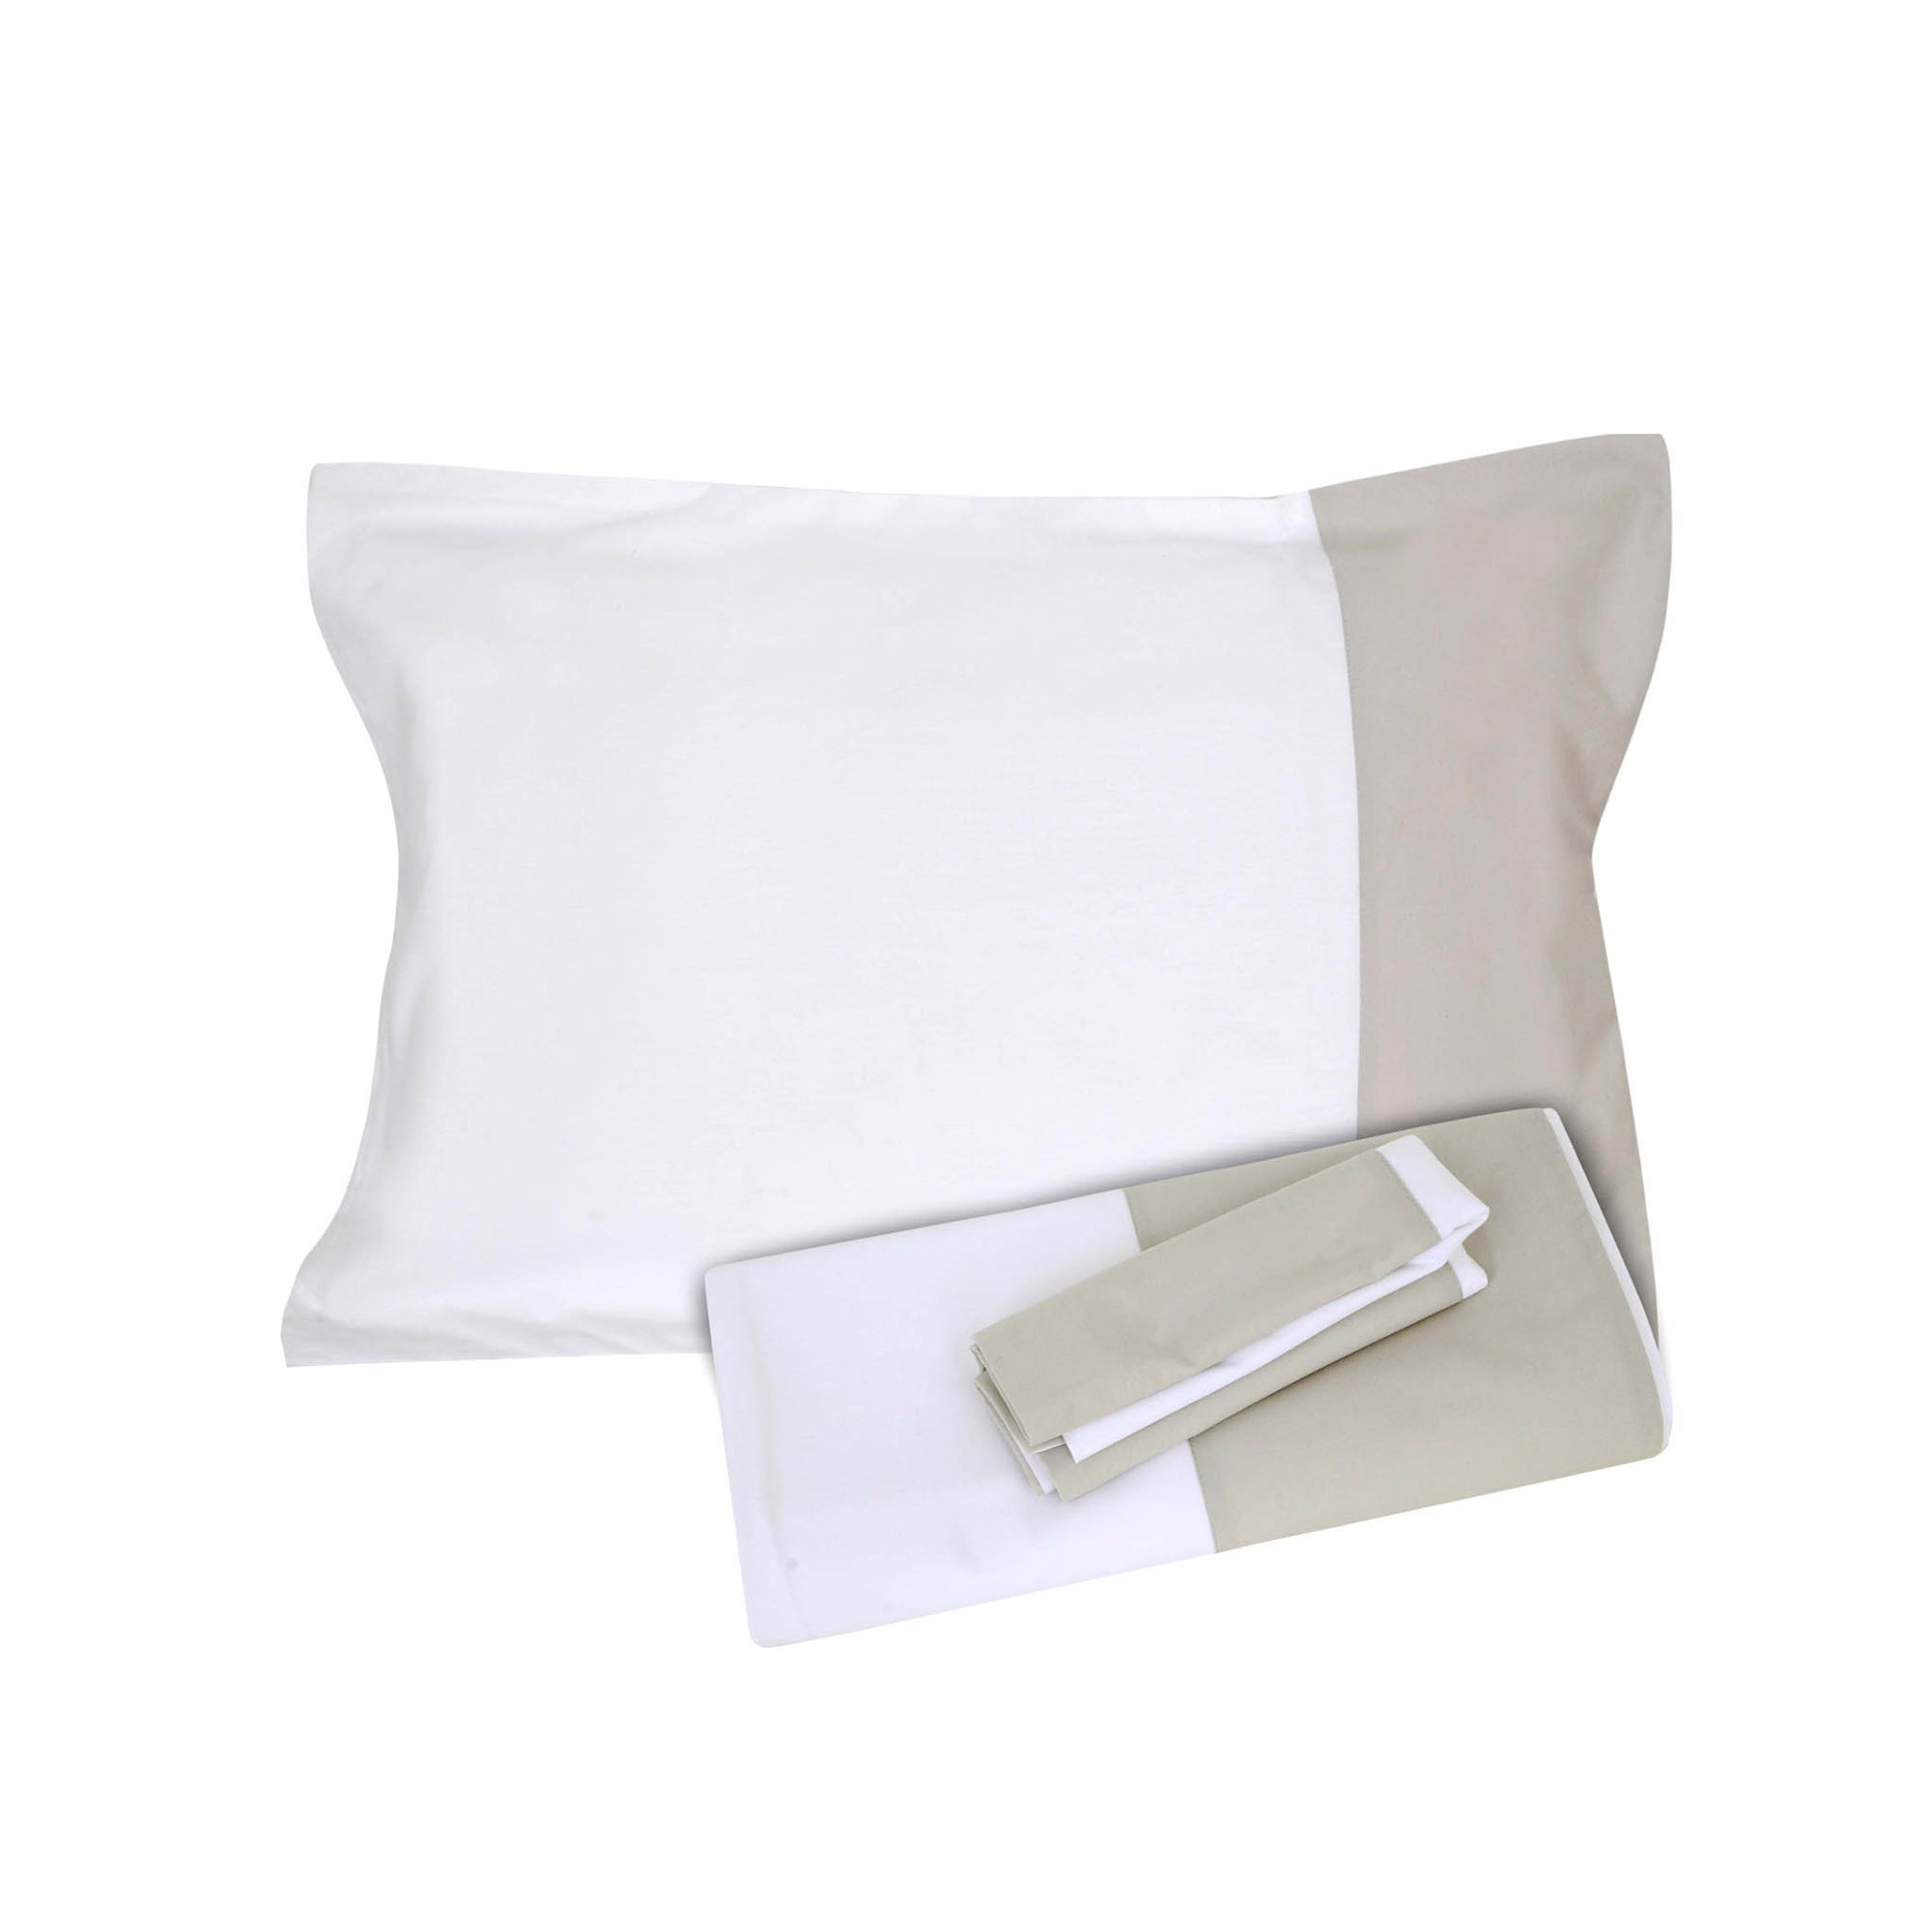 White/Beige Border Flat Sheet + Pillowcases